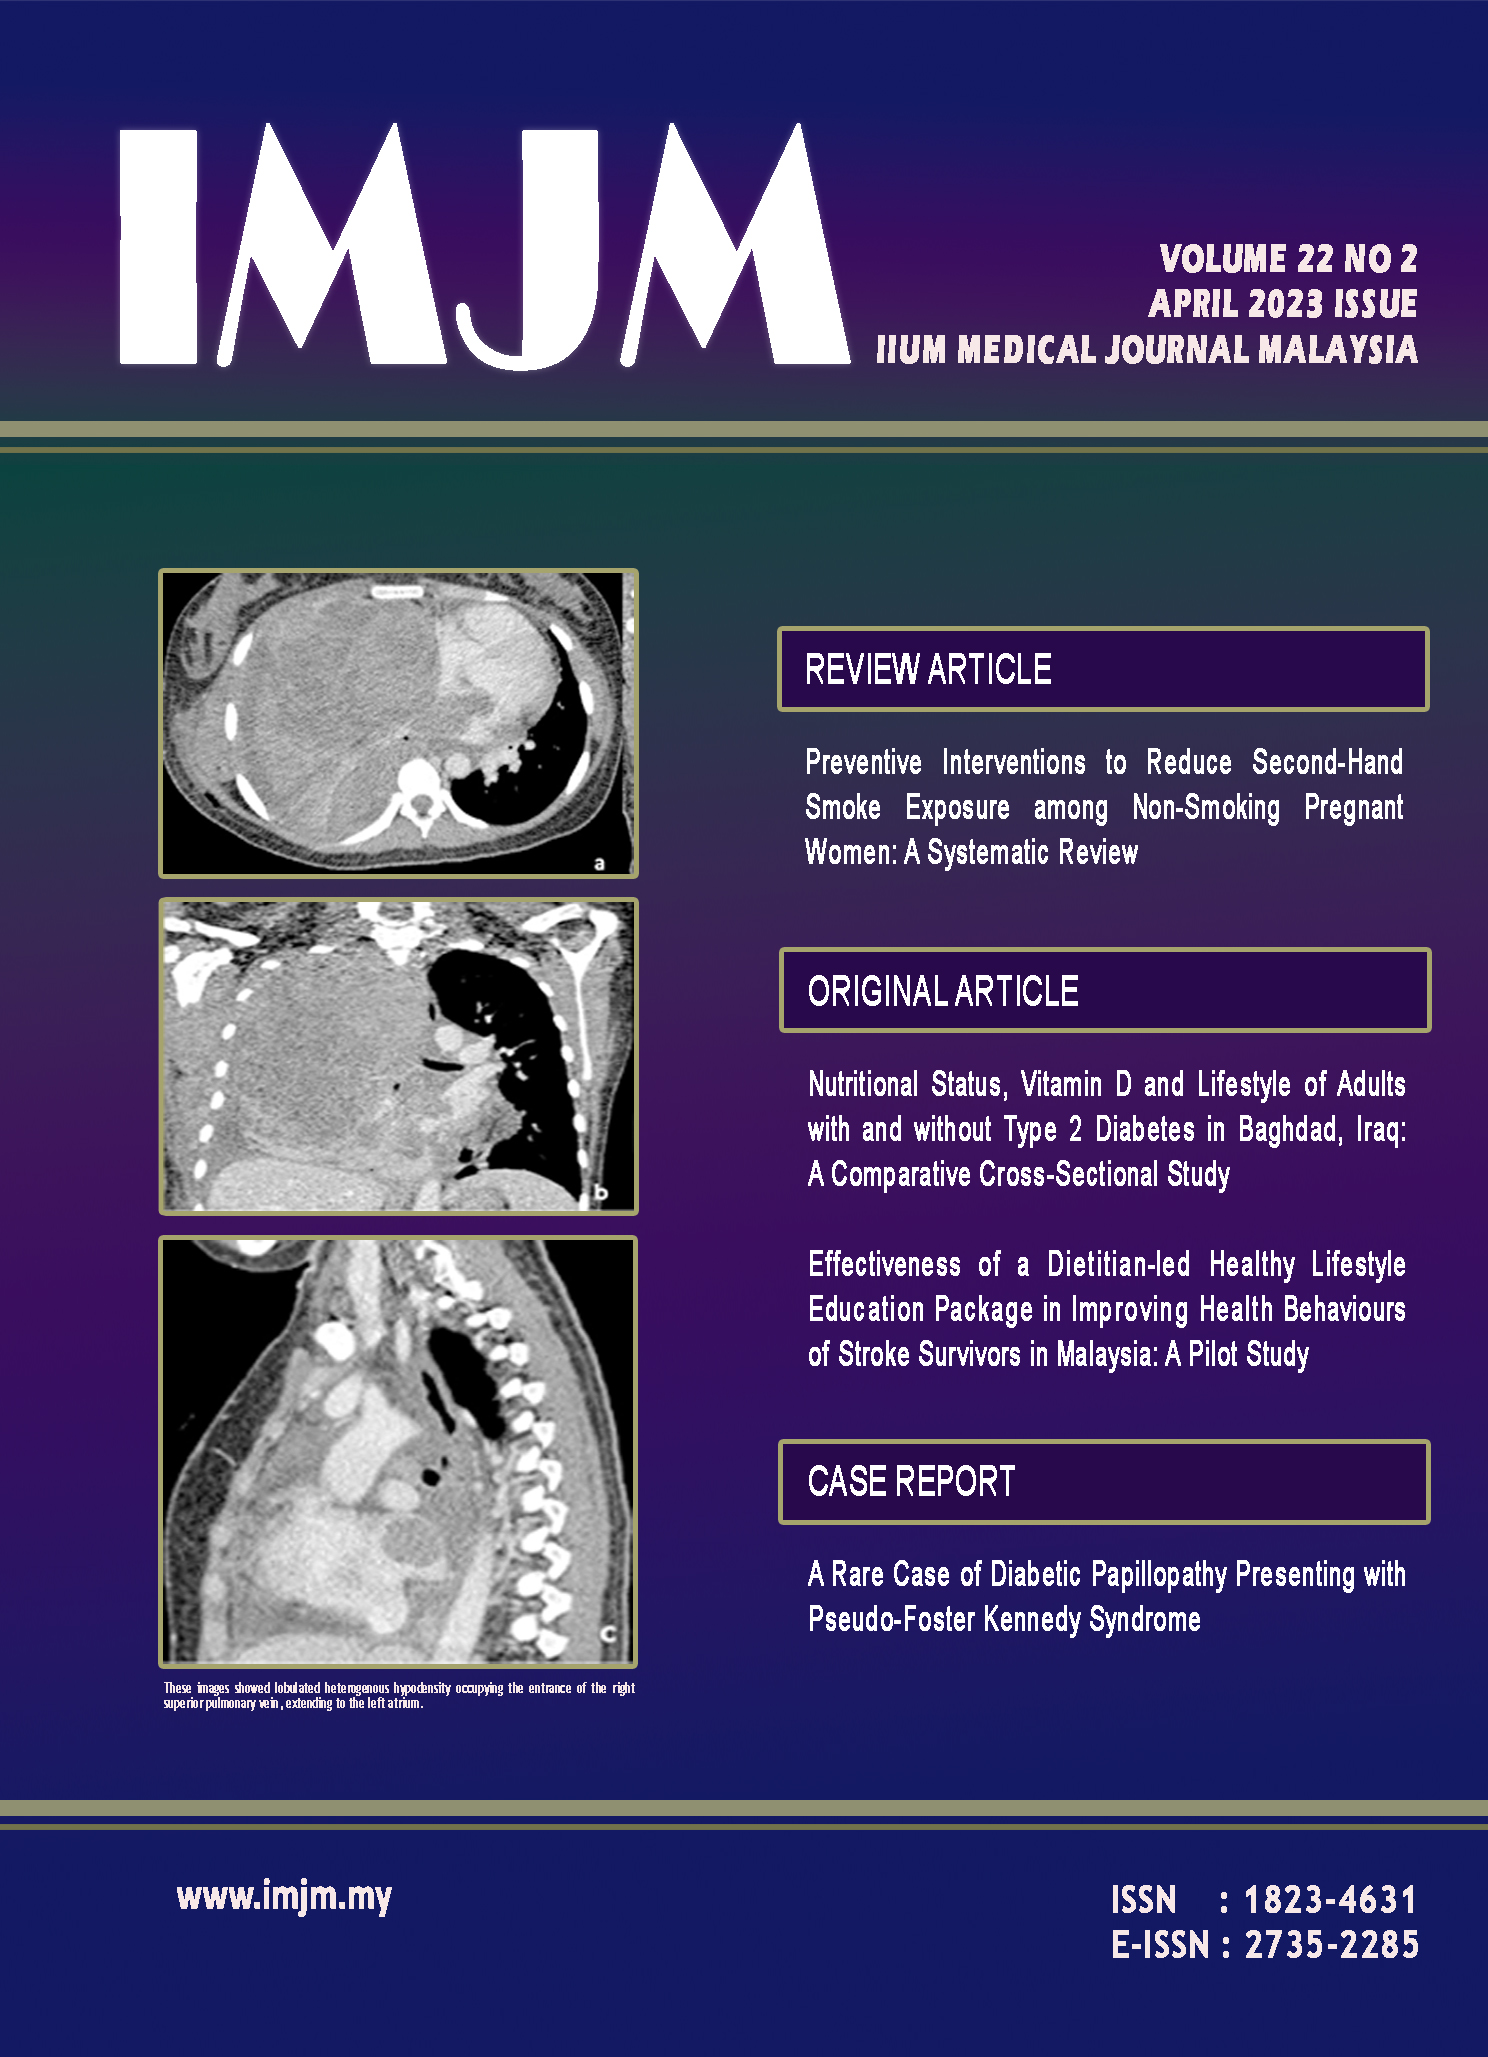 					View Vol. 22 No. 2 (2023): IIUM Medical Journal Malaysia - April 2023
				